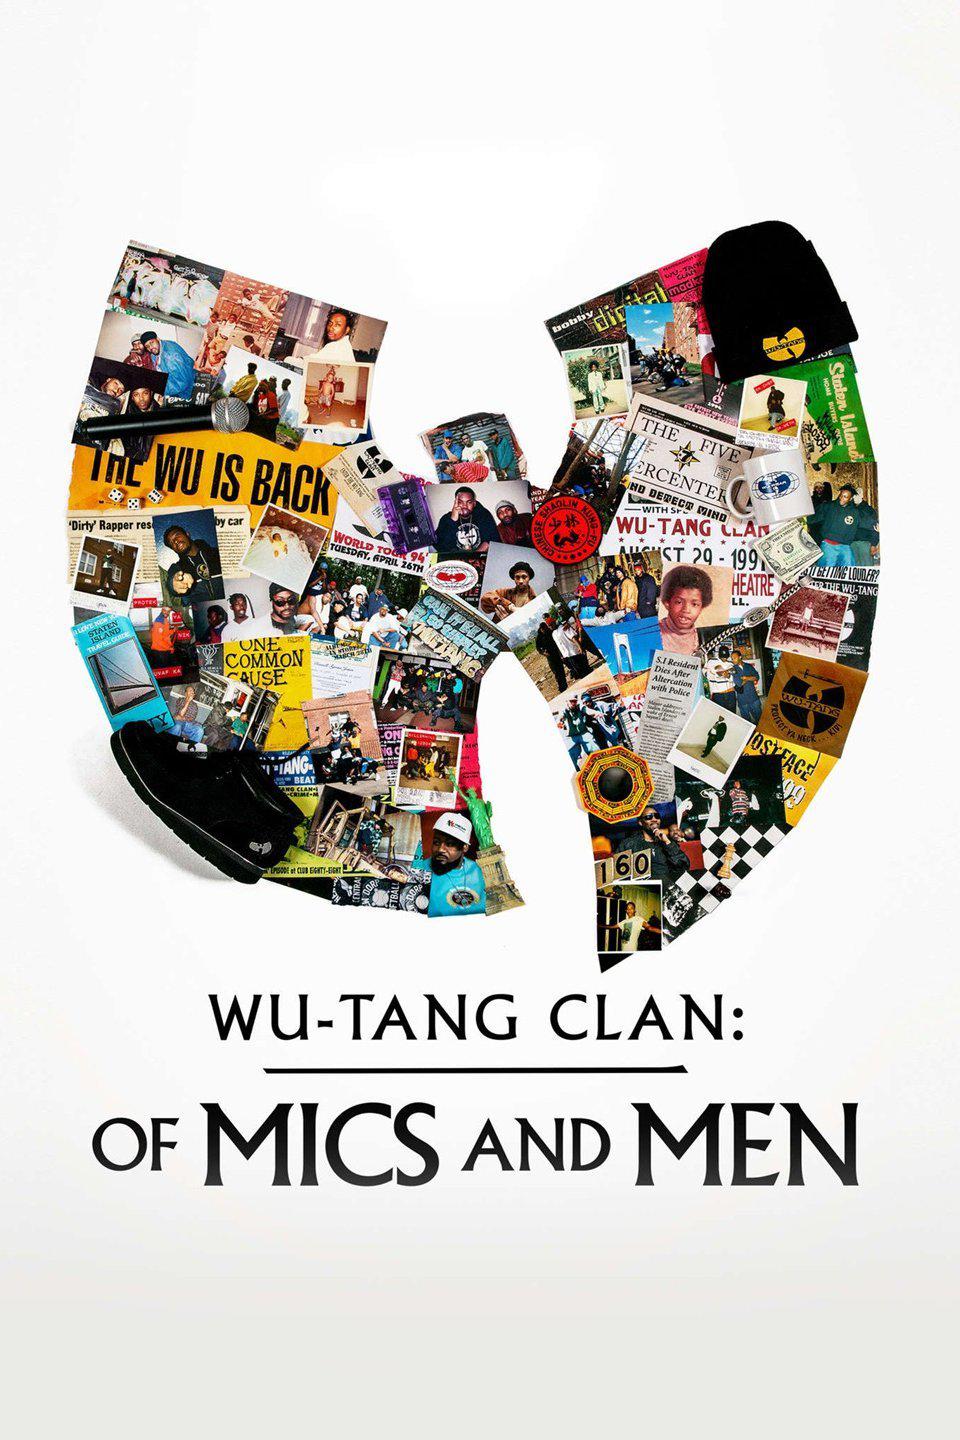 TV ratings for Wu-tang Clan: Of Mics And Men in Japan. SHOWTIME TV series